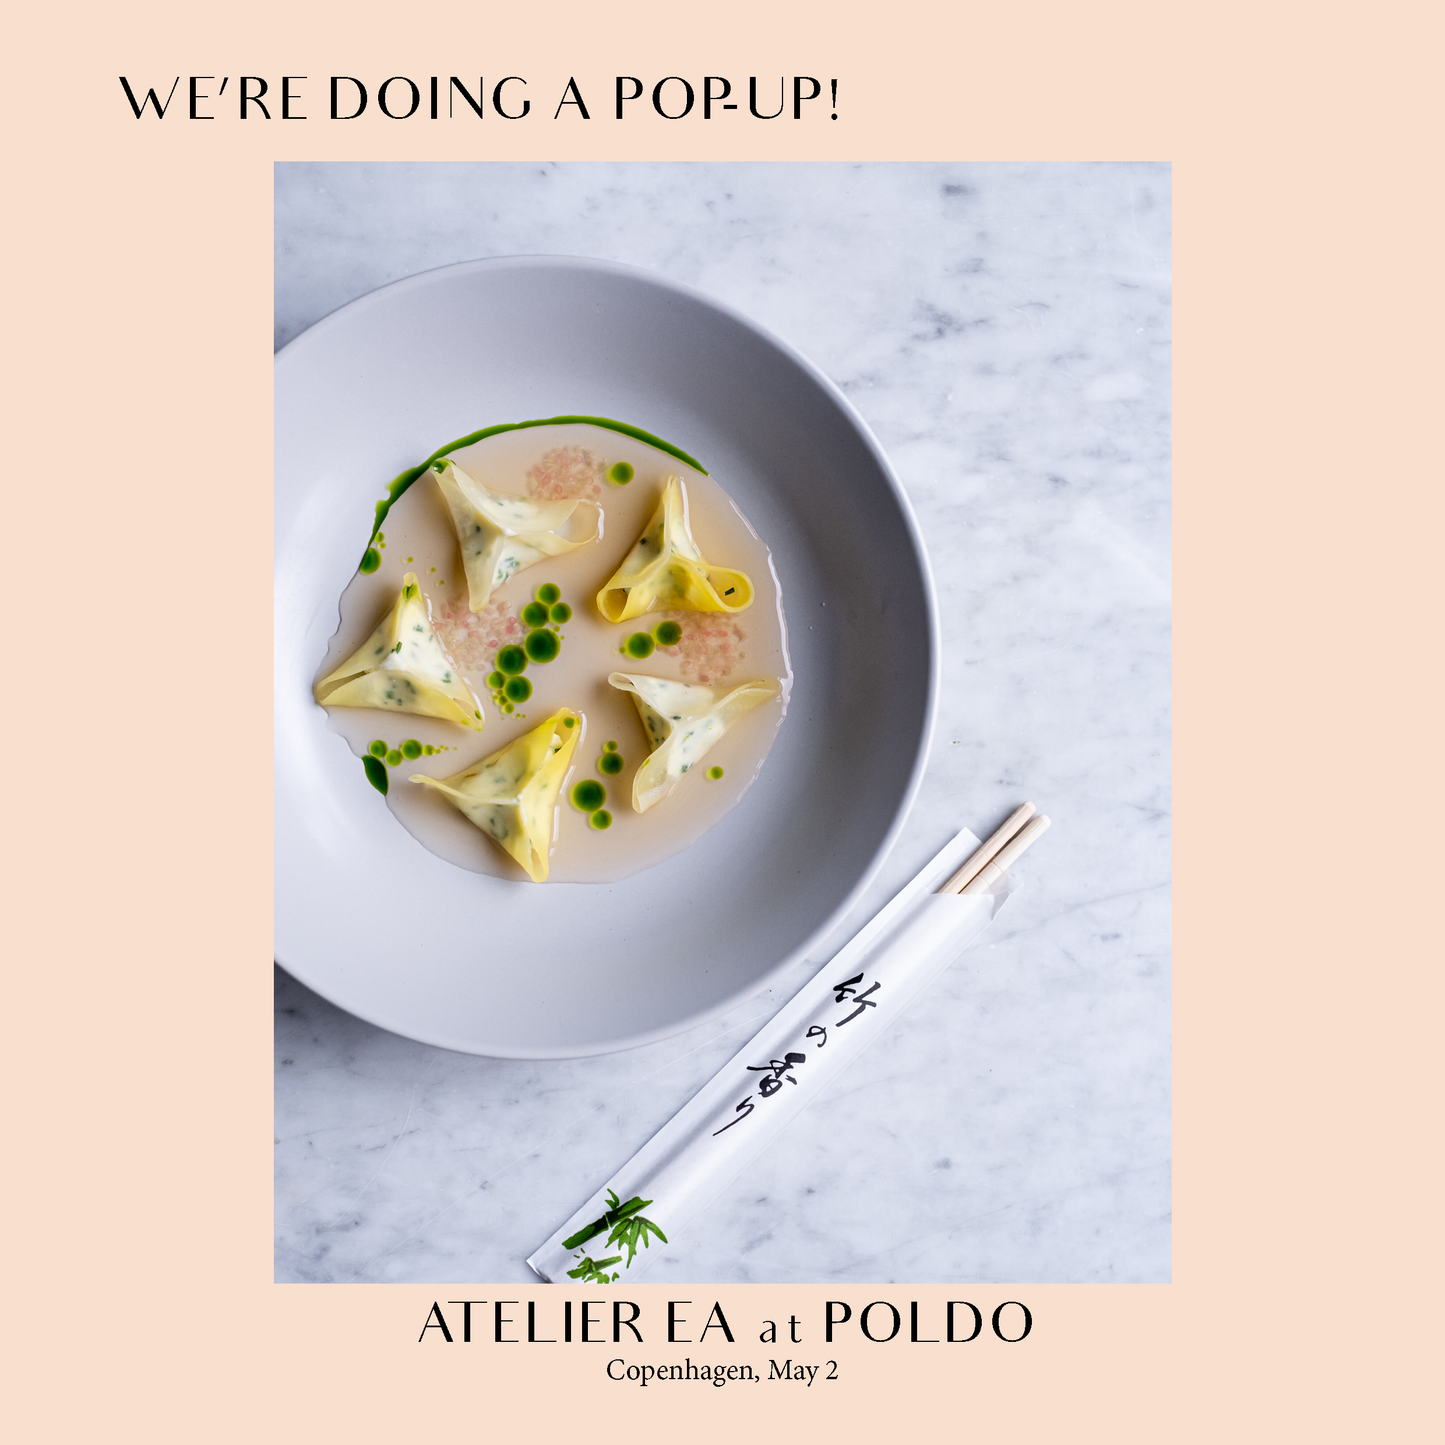 Atelier Ea at Bar Poldo dinner (6-course menu)